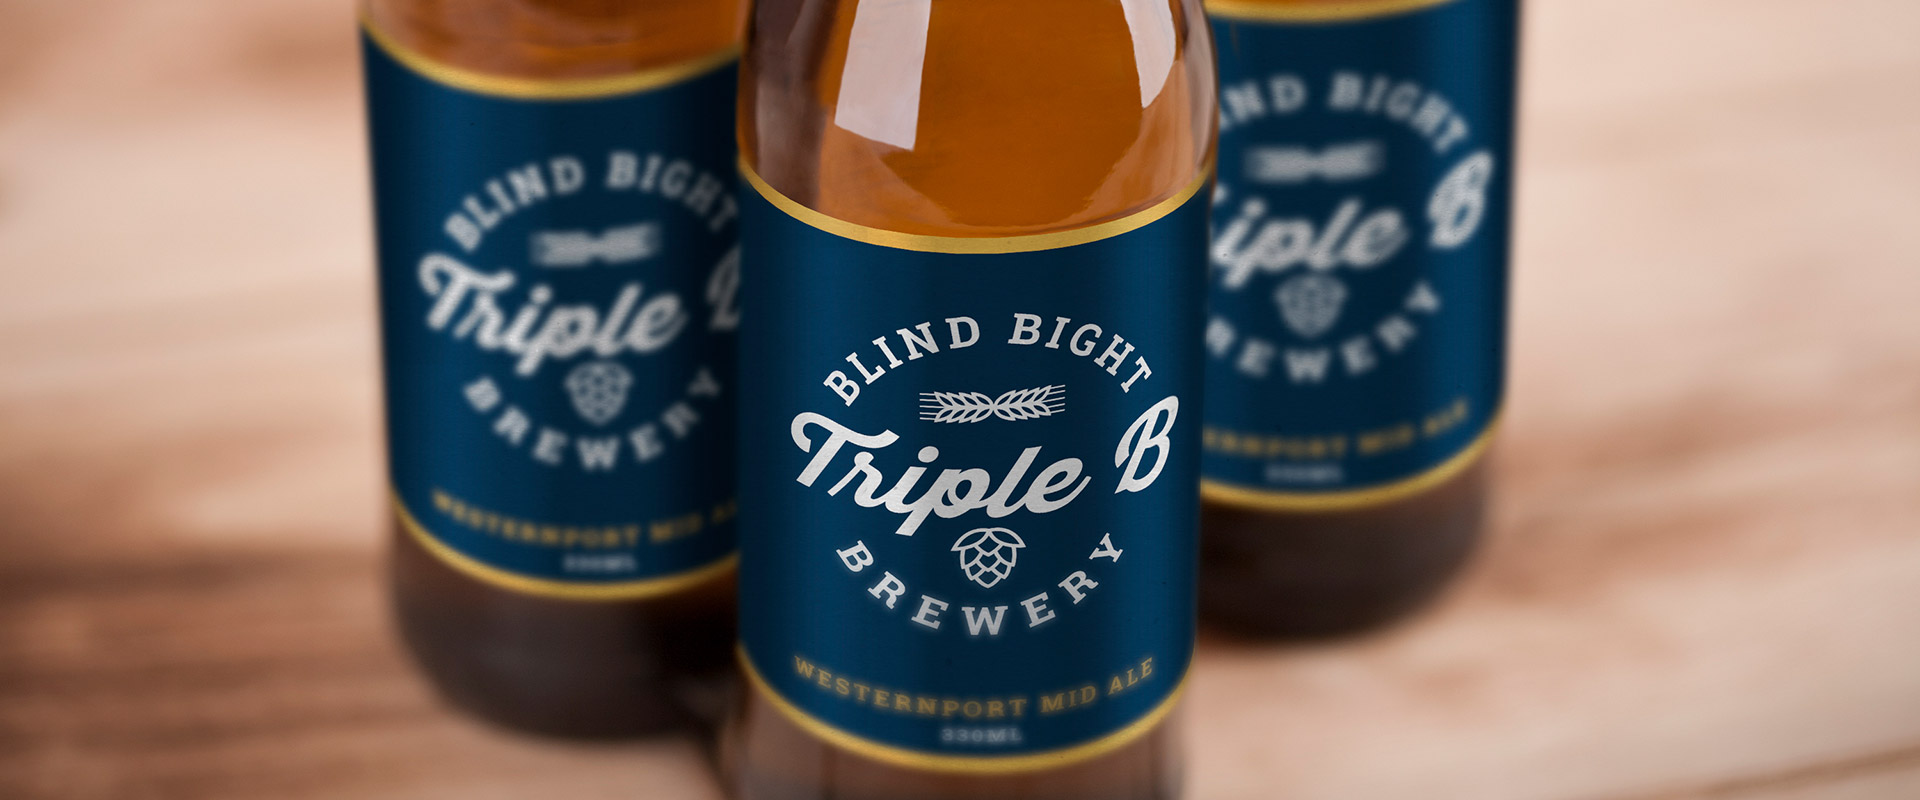 Blind Bight Brewery banner